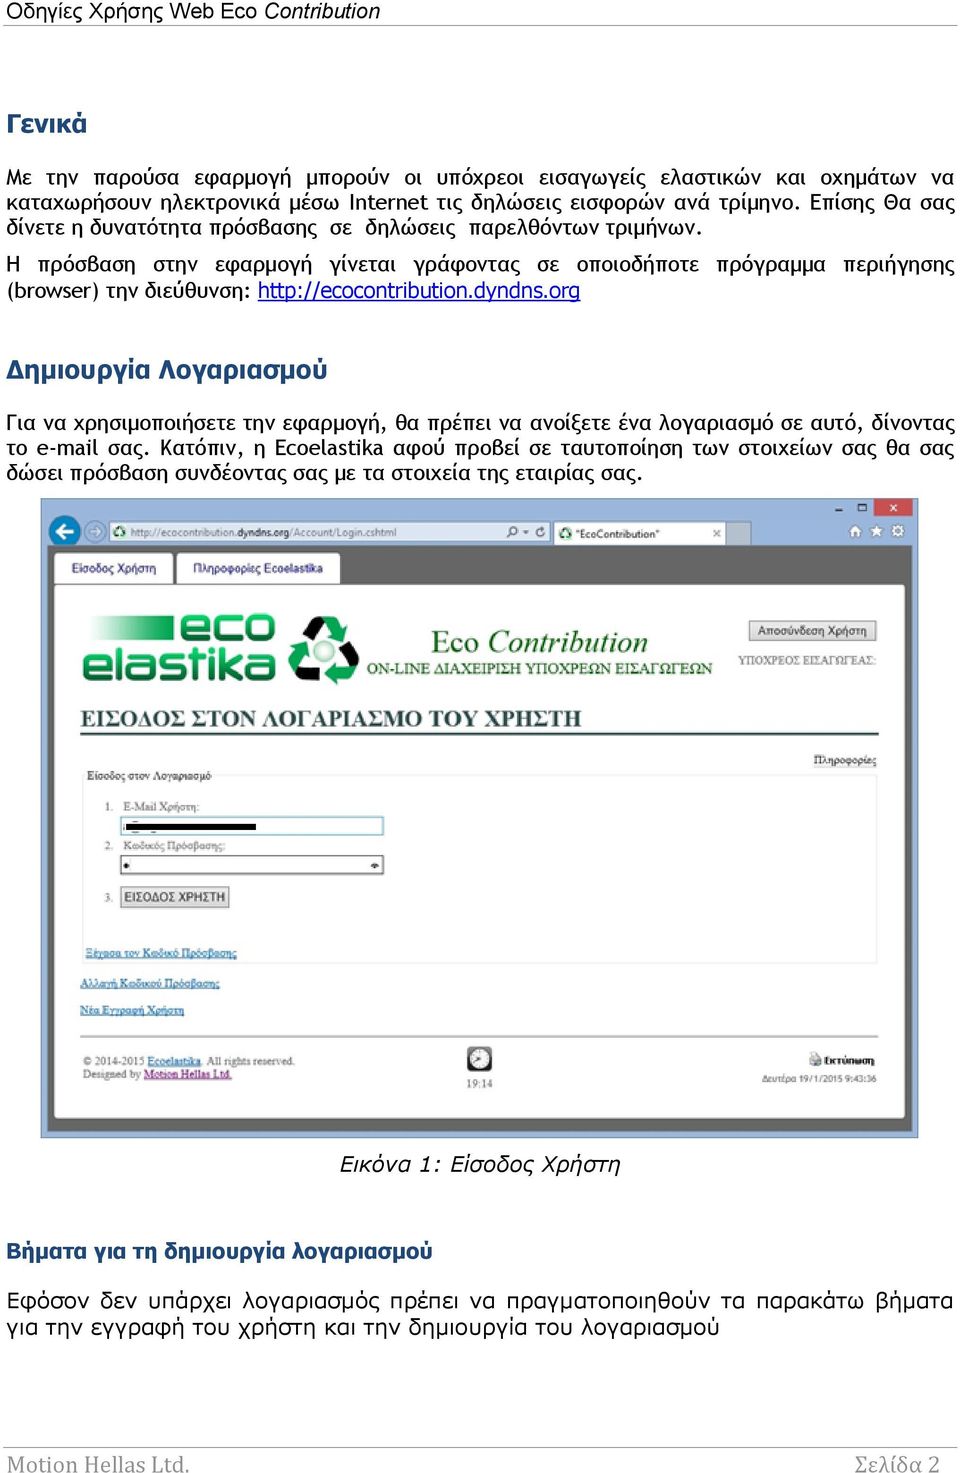 Η πρόσβαση στην εφαρμογή γίνεται γράφοντας σε οποιοδήποτε πρόγραμμα περιήγησης (browser) την διεύθυνση: http://ecocontribution.dyndns.